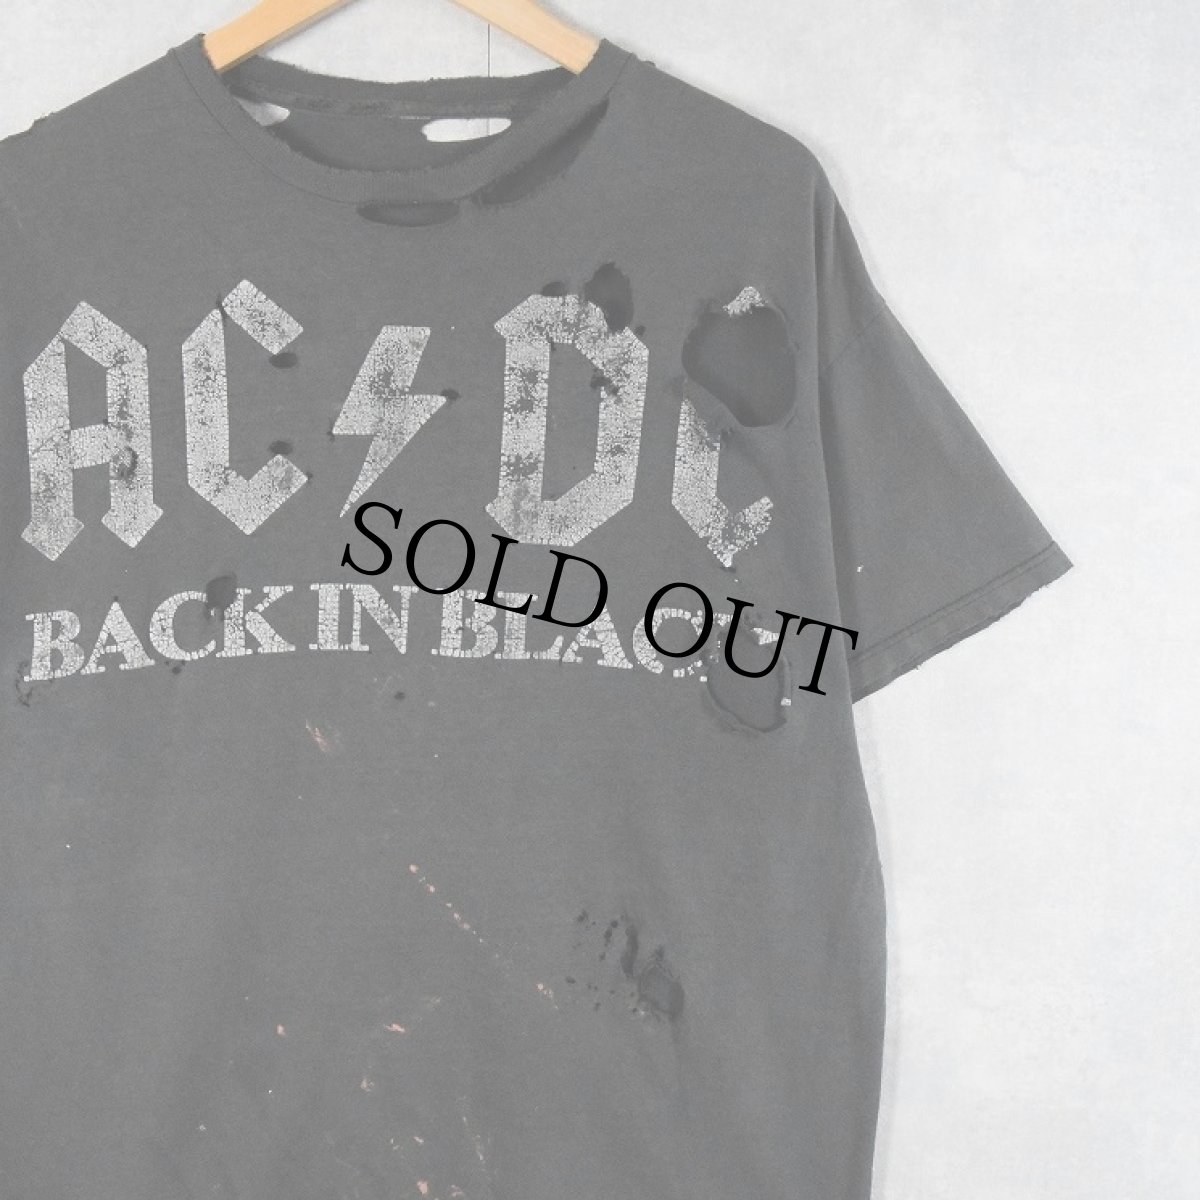 画像1: AC/DC "BACK IN BLACK" ロックバンドTシャツ (1)